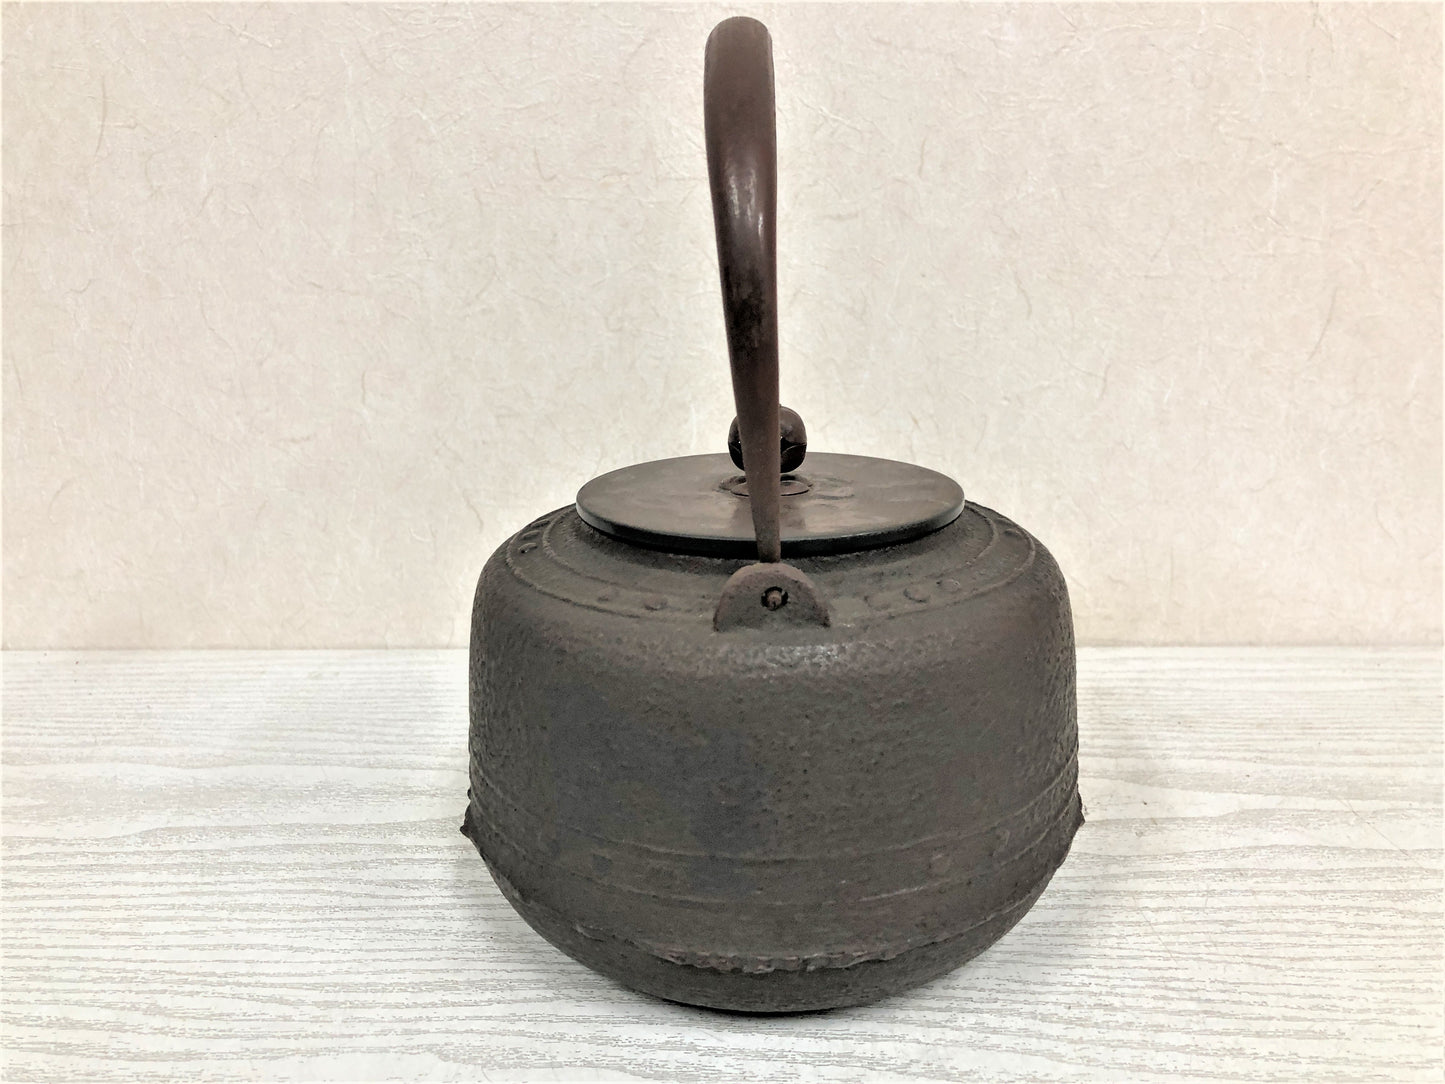 Y3869 TETSUBIN Iron pot Copper lid Iron Tea Kettle Teapot Japan antique kitchen